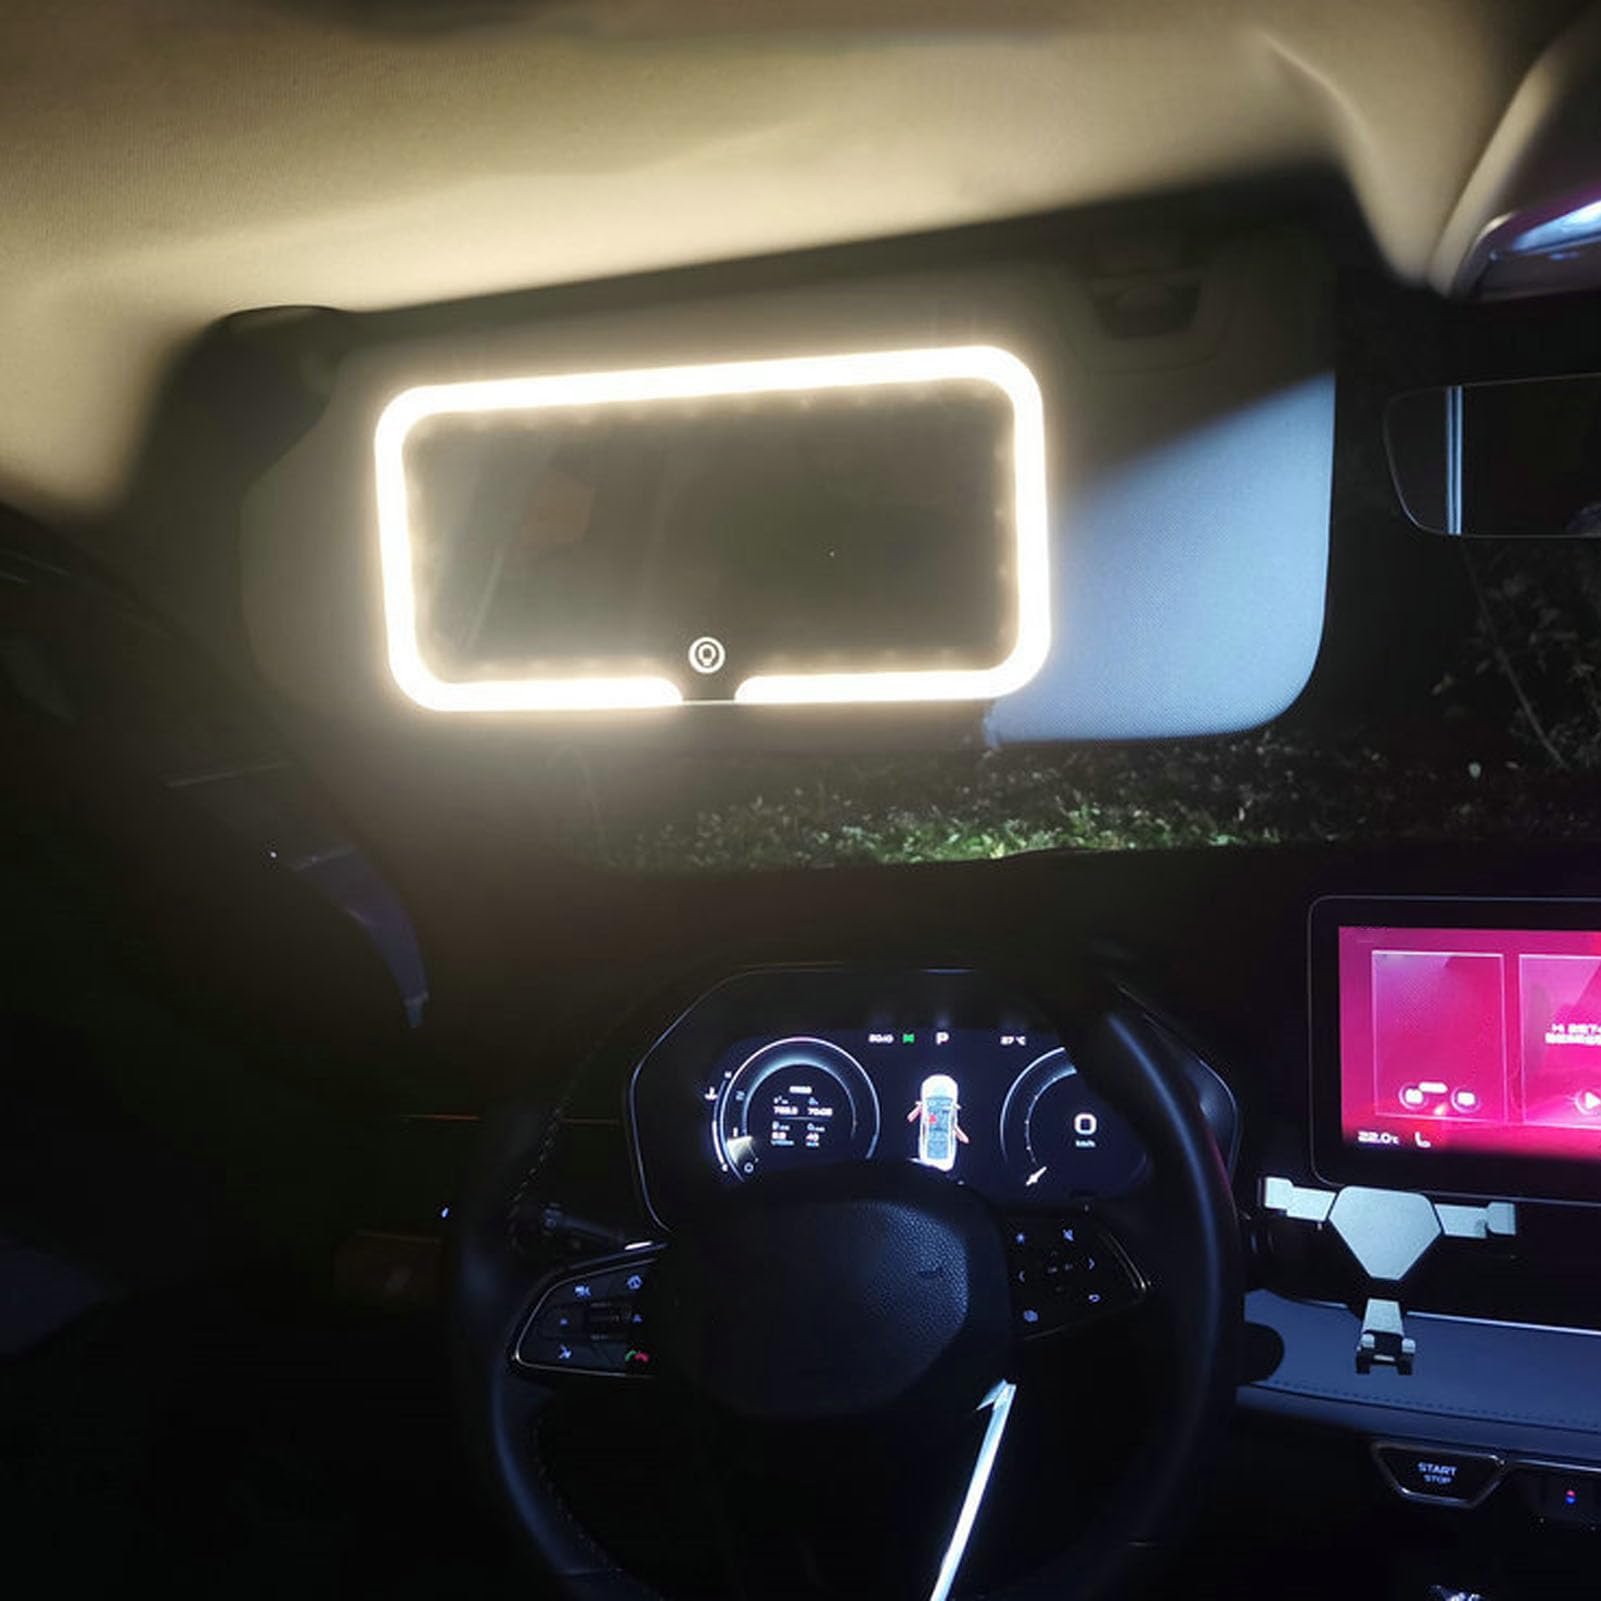 Auto-Visier-LED-Kosmetikspiegel mit Klarer Bildgebung, 4-seitig Aufhellendes Licht, 3 Farbtemperaturen, Lange Akkulaufzeit für Reisen, Integrierter Haken für Einfache Installation von ZJchao